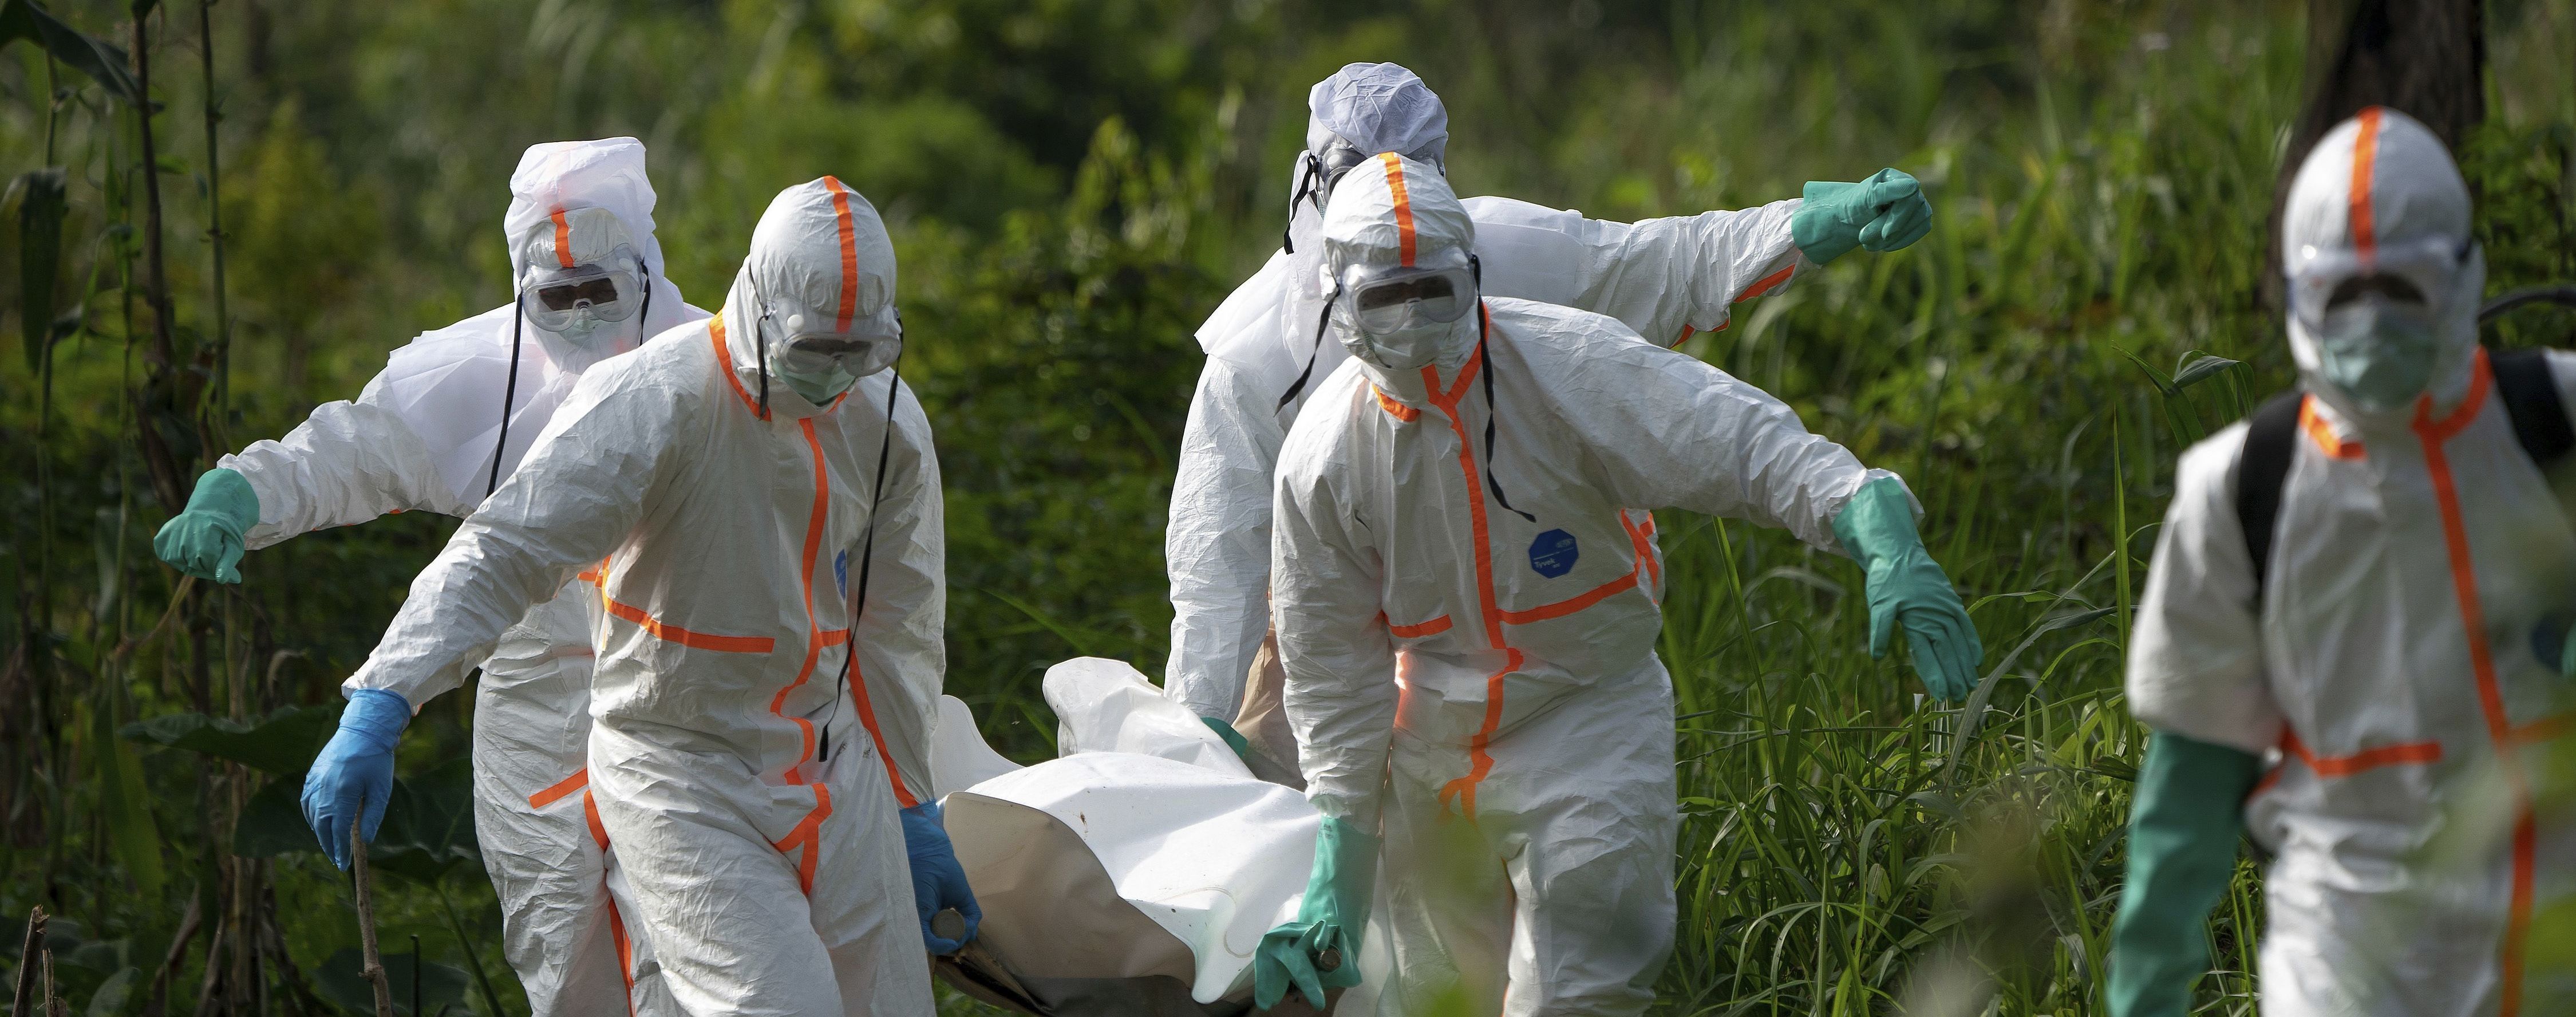 Лихорадка западного Нила, вирусы Зика и Эбола, "агент Х": инфекционисты назвали угрозы, значительно страшнее коронавируса